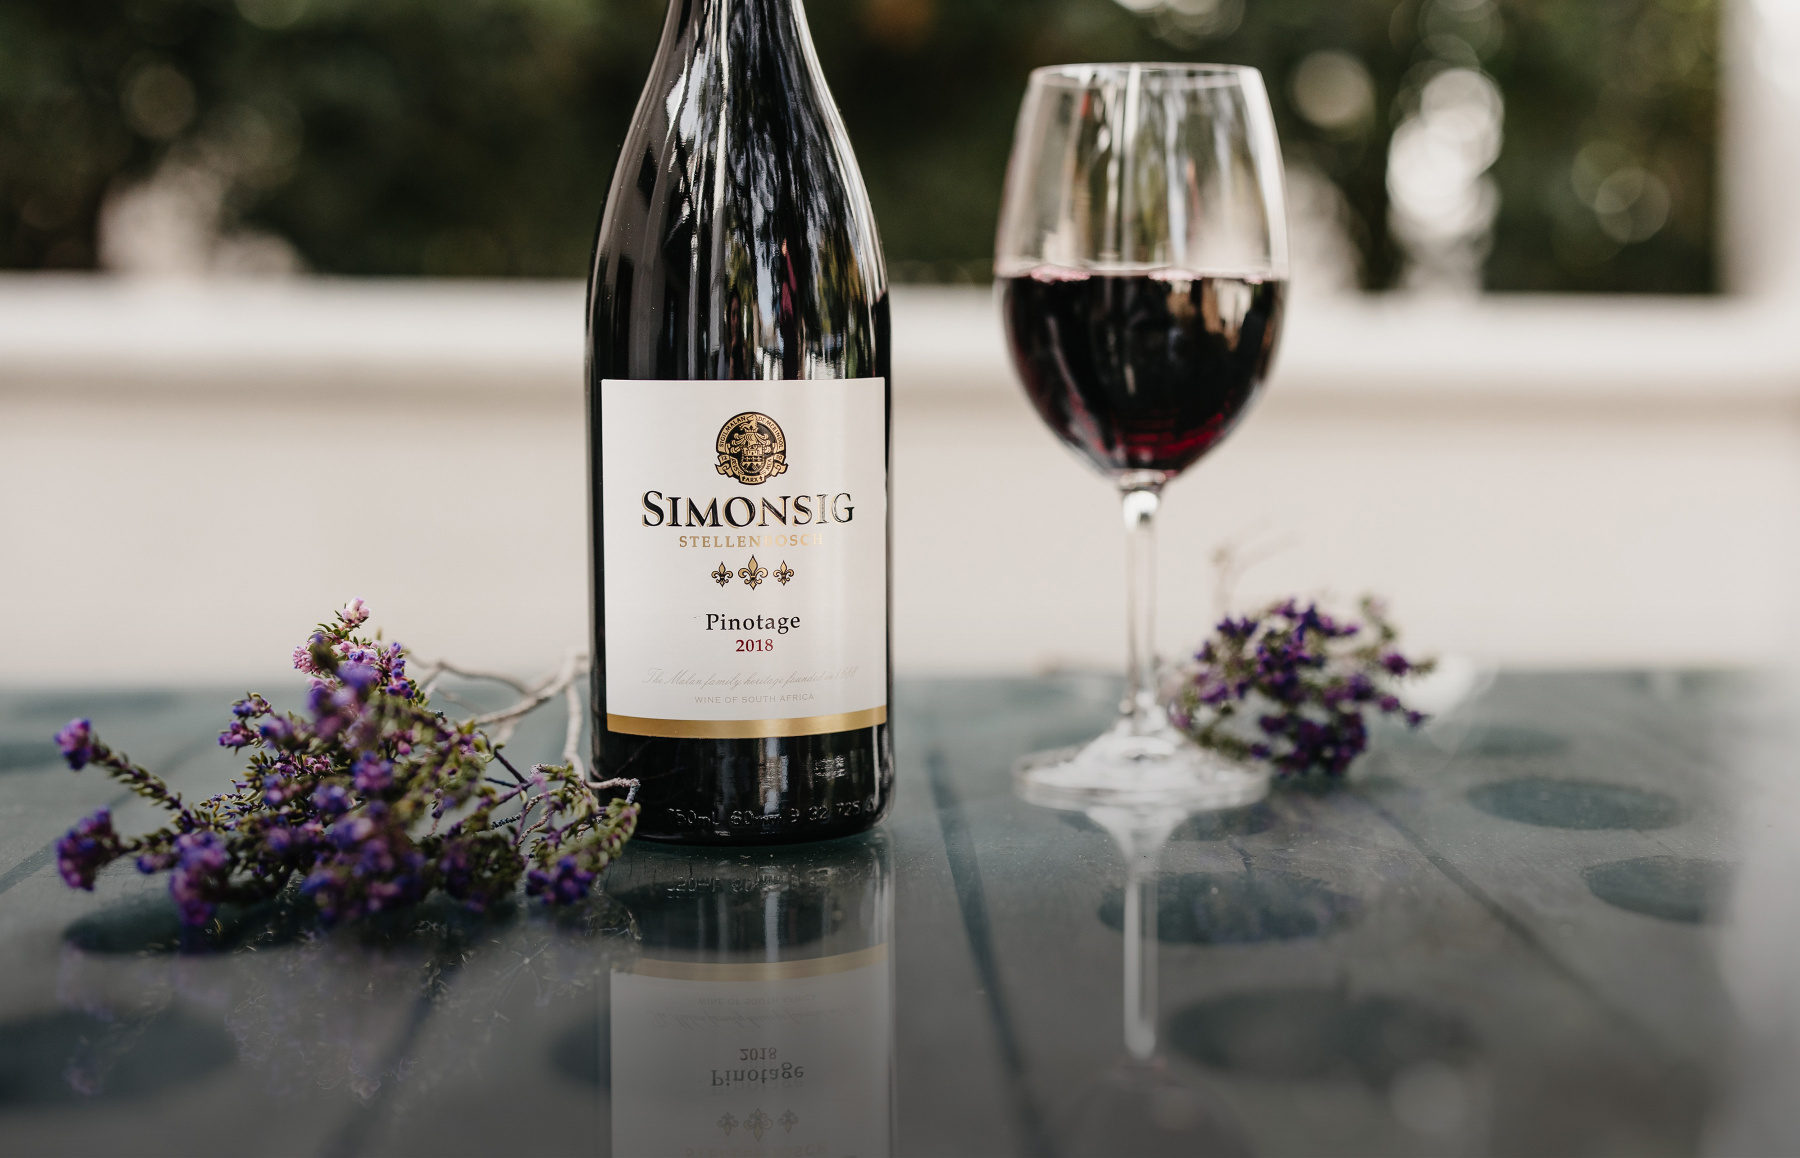 ЮАР в новом свете: легендарные вина Simonsig